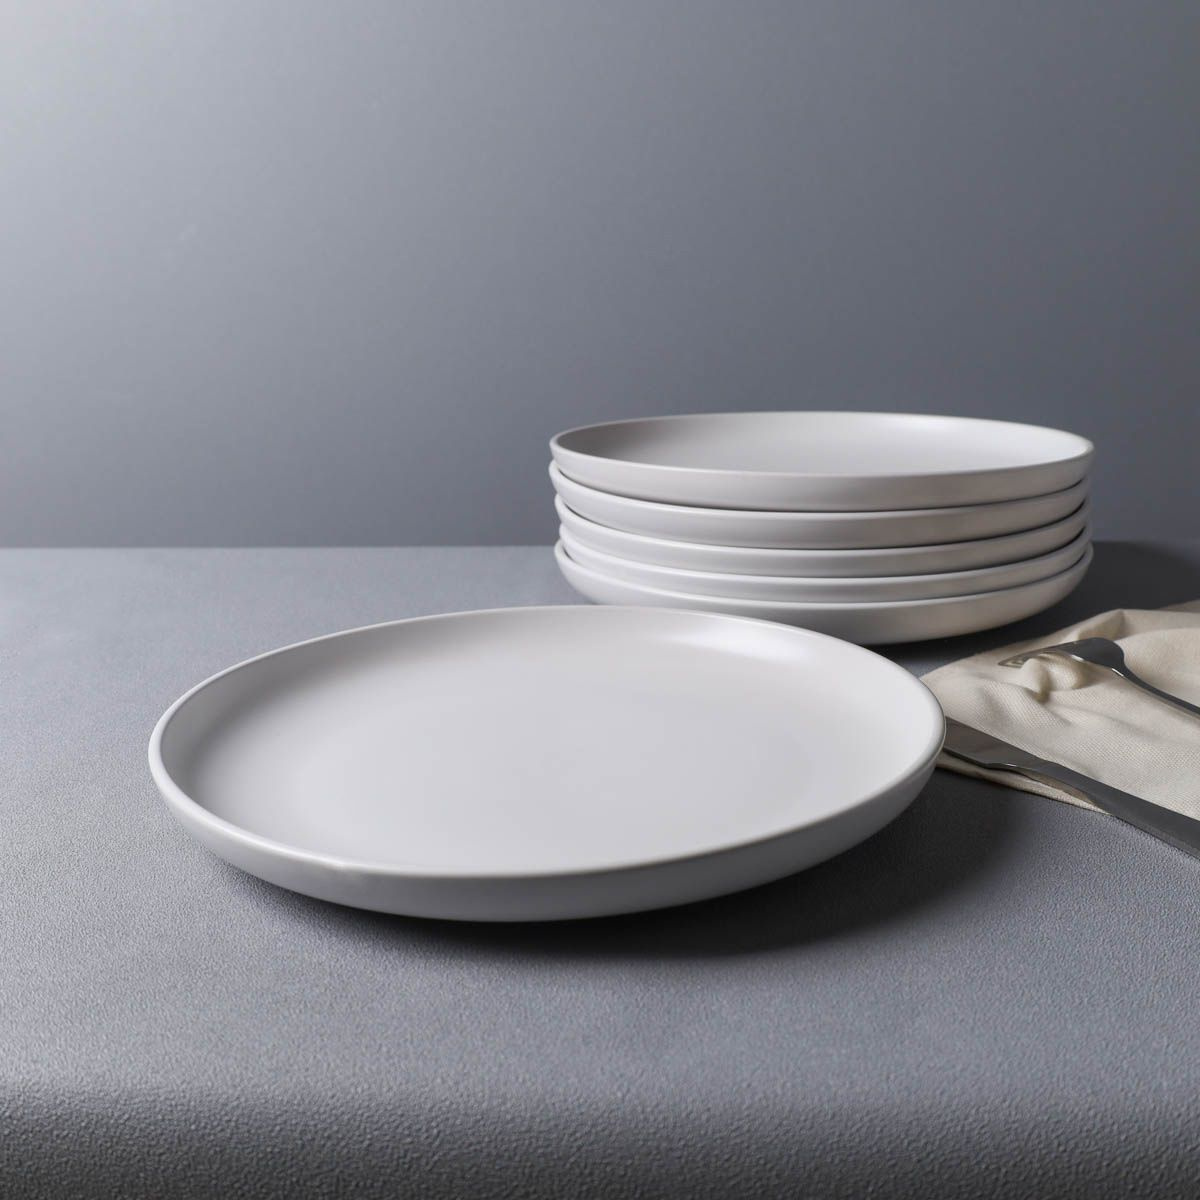 набор тарелок; набор плоских тарелок; набор десертных тарелок; тарелки керамические; набор керамических тарелок; керамическая посуда; набор посуды; набор столовой посуды; тарелки 4 штуки;